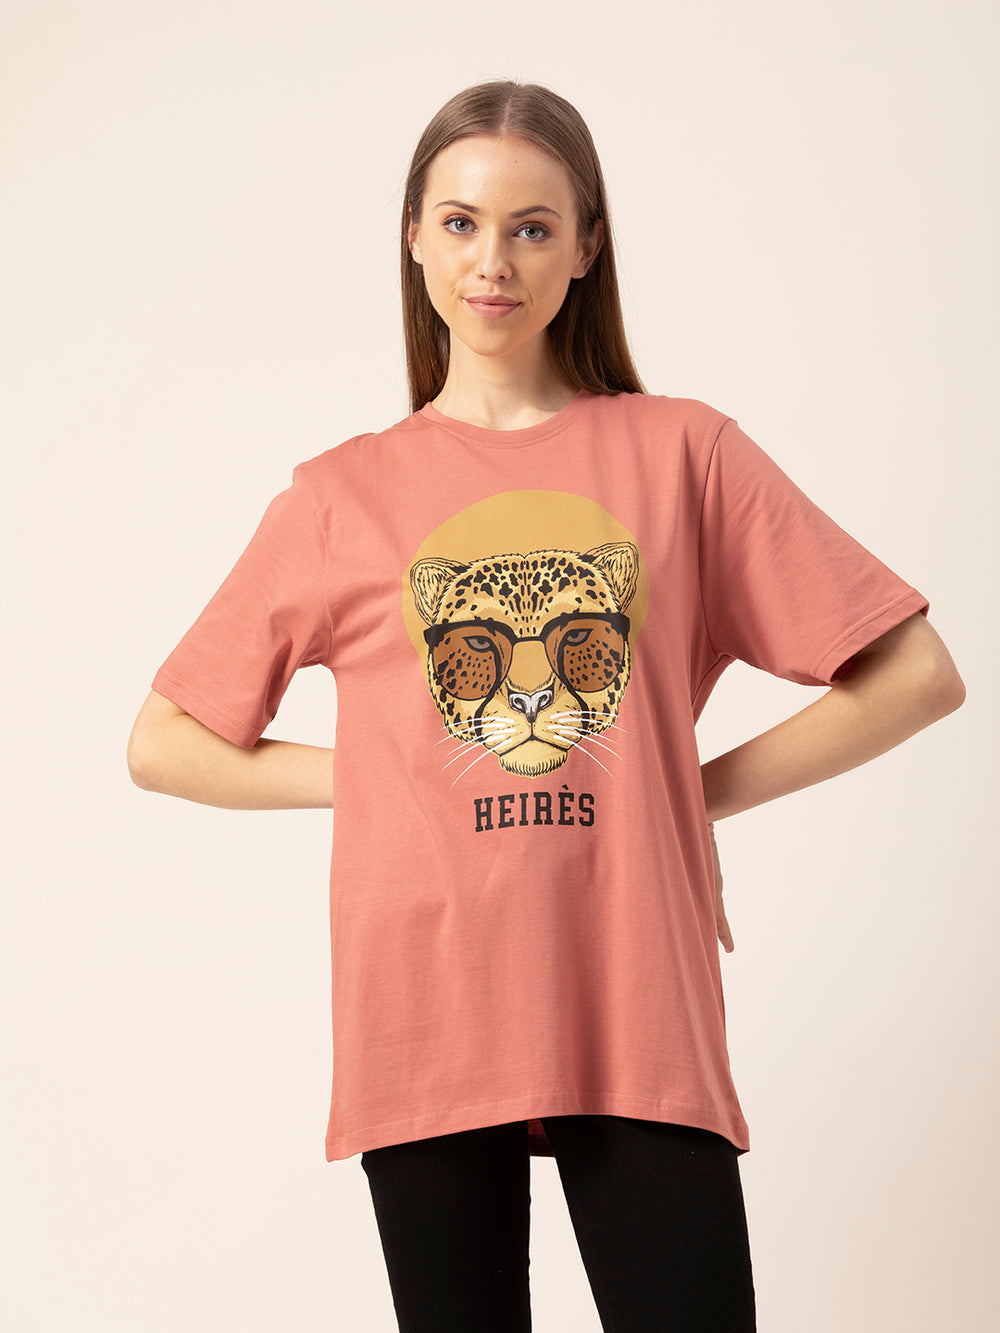 Heires Women's Oversized T-Shirt